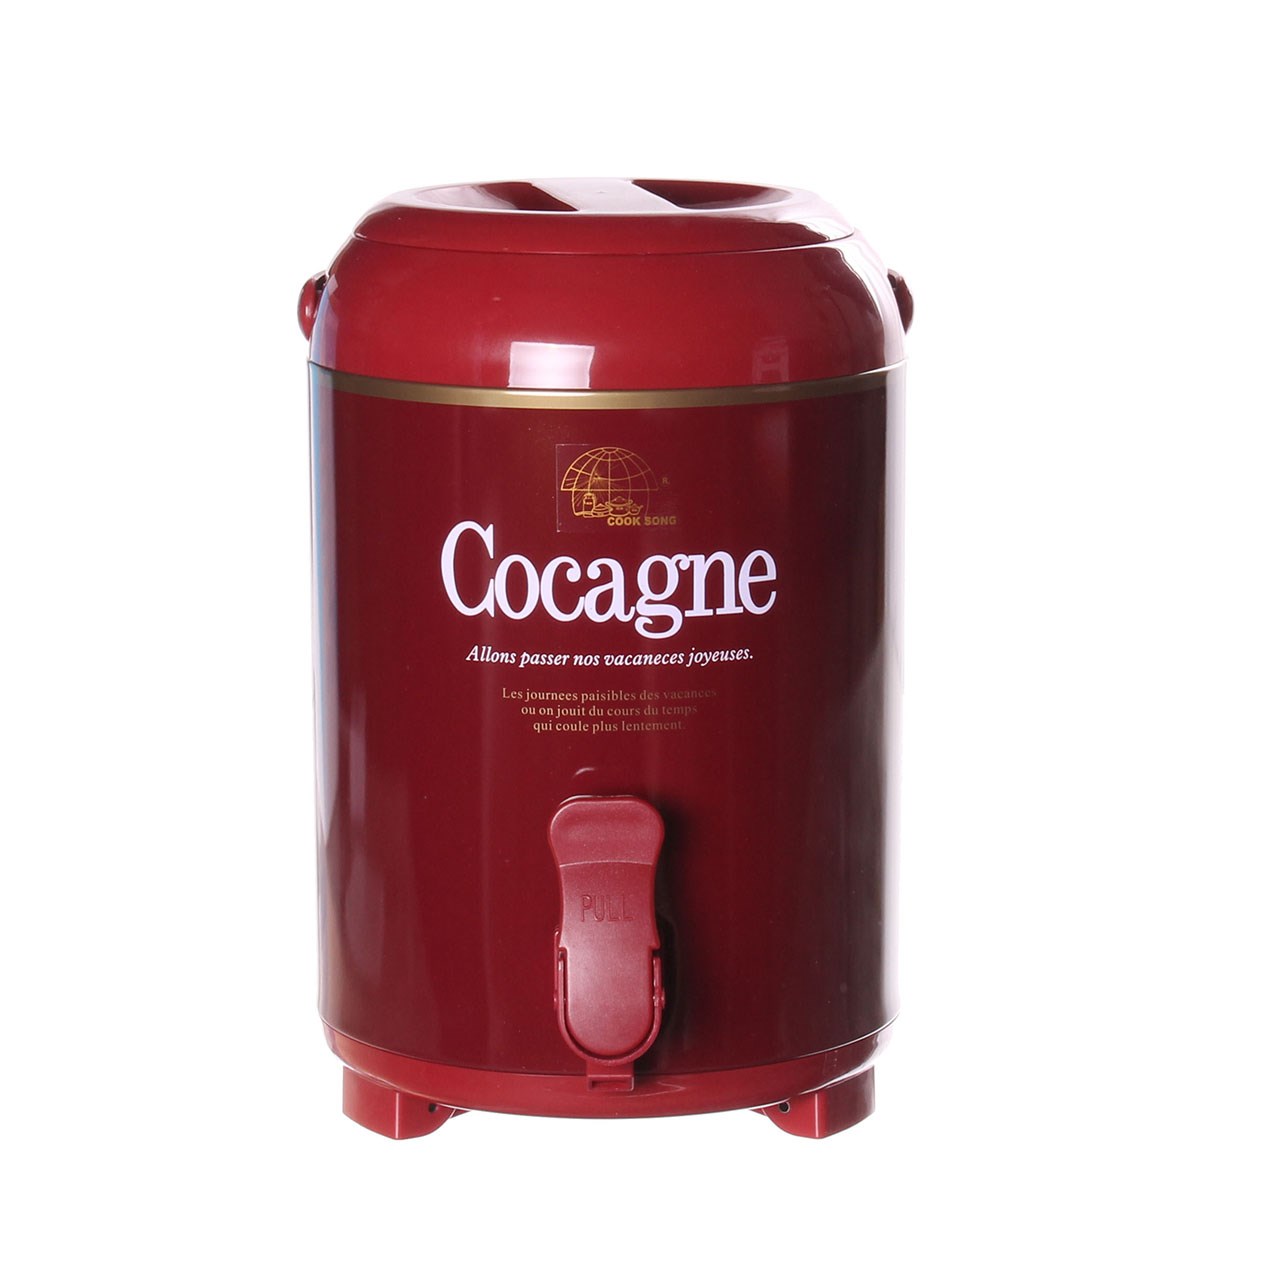 کلمن کوک سانگ مدل Cocagne ظرفیت 4 لیتر